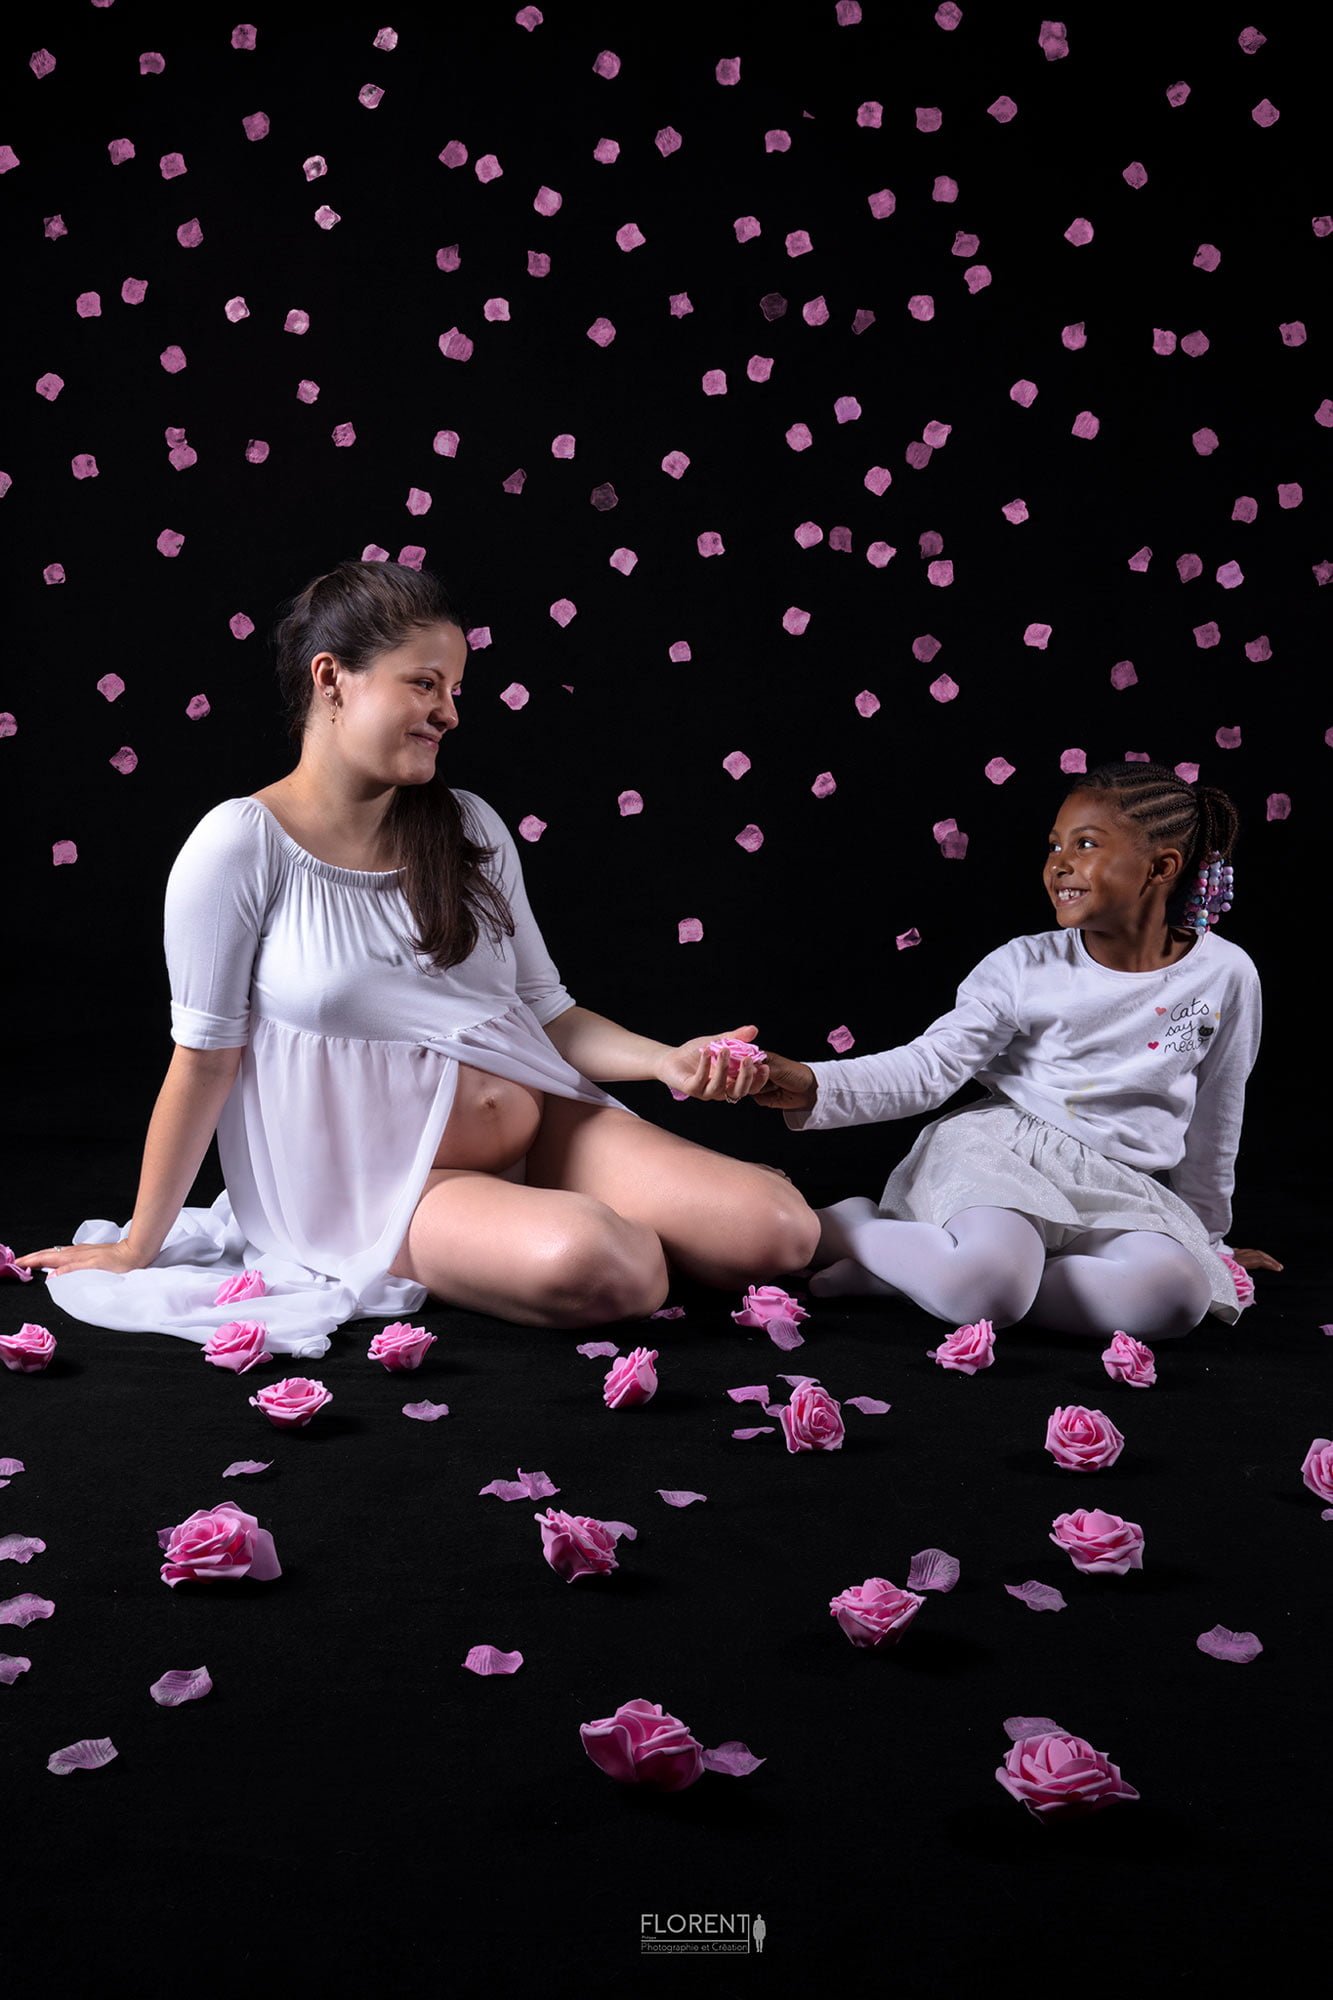 photo artistitique maternité grossesse avec enfant et roses florent photographe boulogne sur mer lille paris